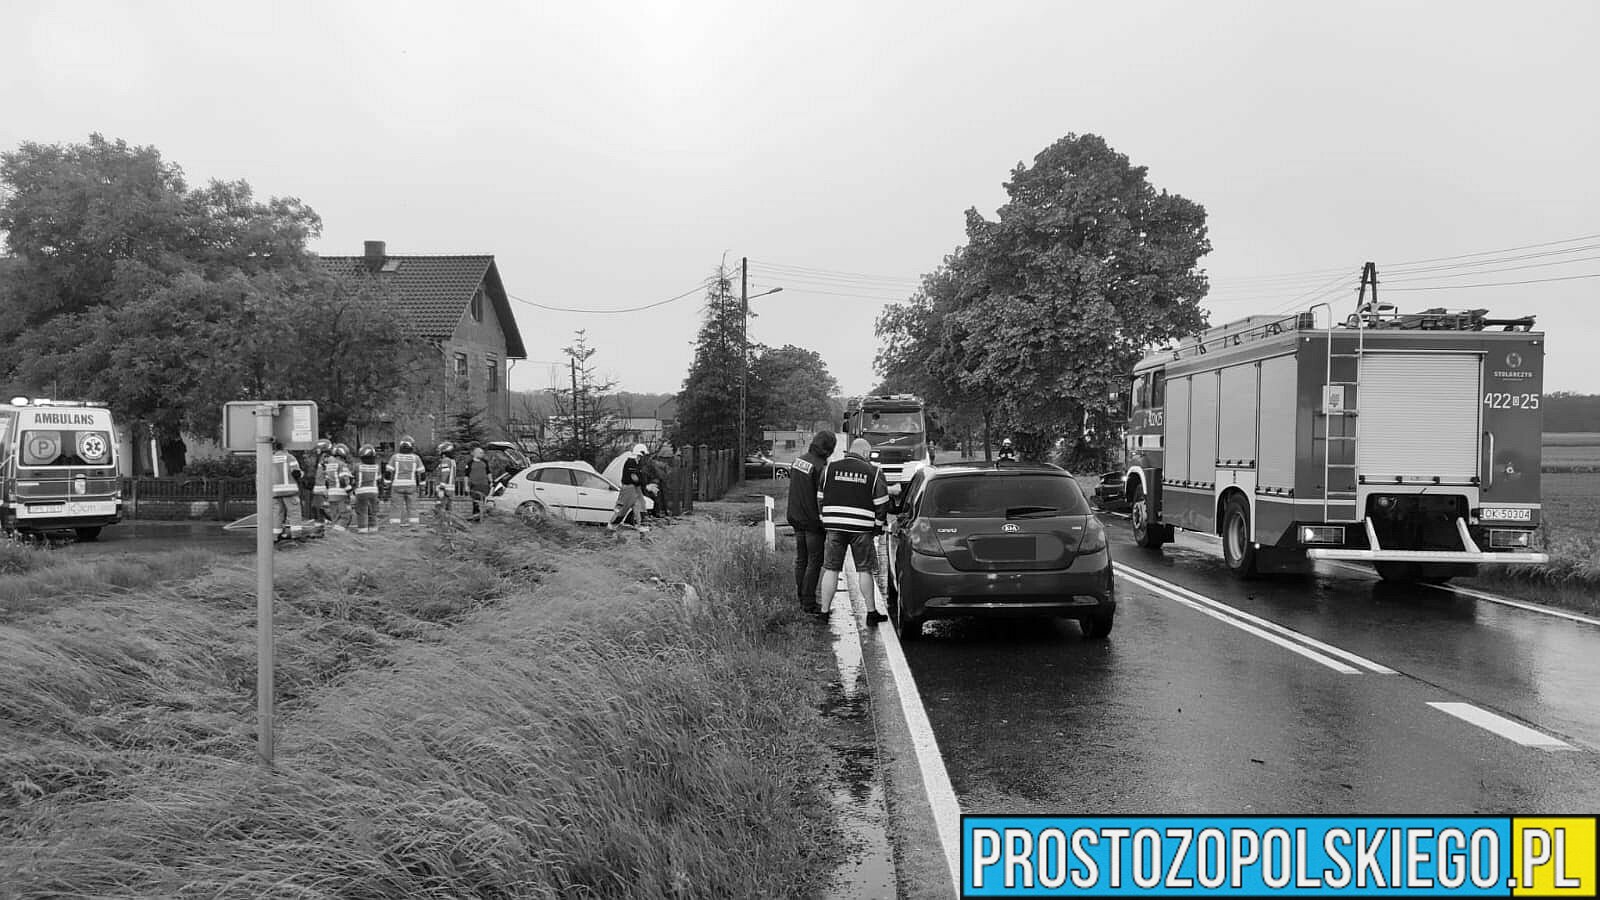 Nie żyje 18-letnia dziewczyna. Wypadek na DK40 w Pokrzywnicy. Na miejscu lądował LPR.